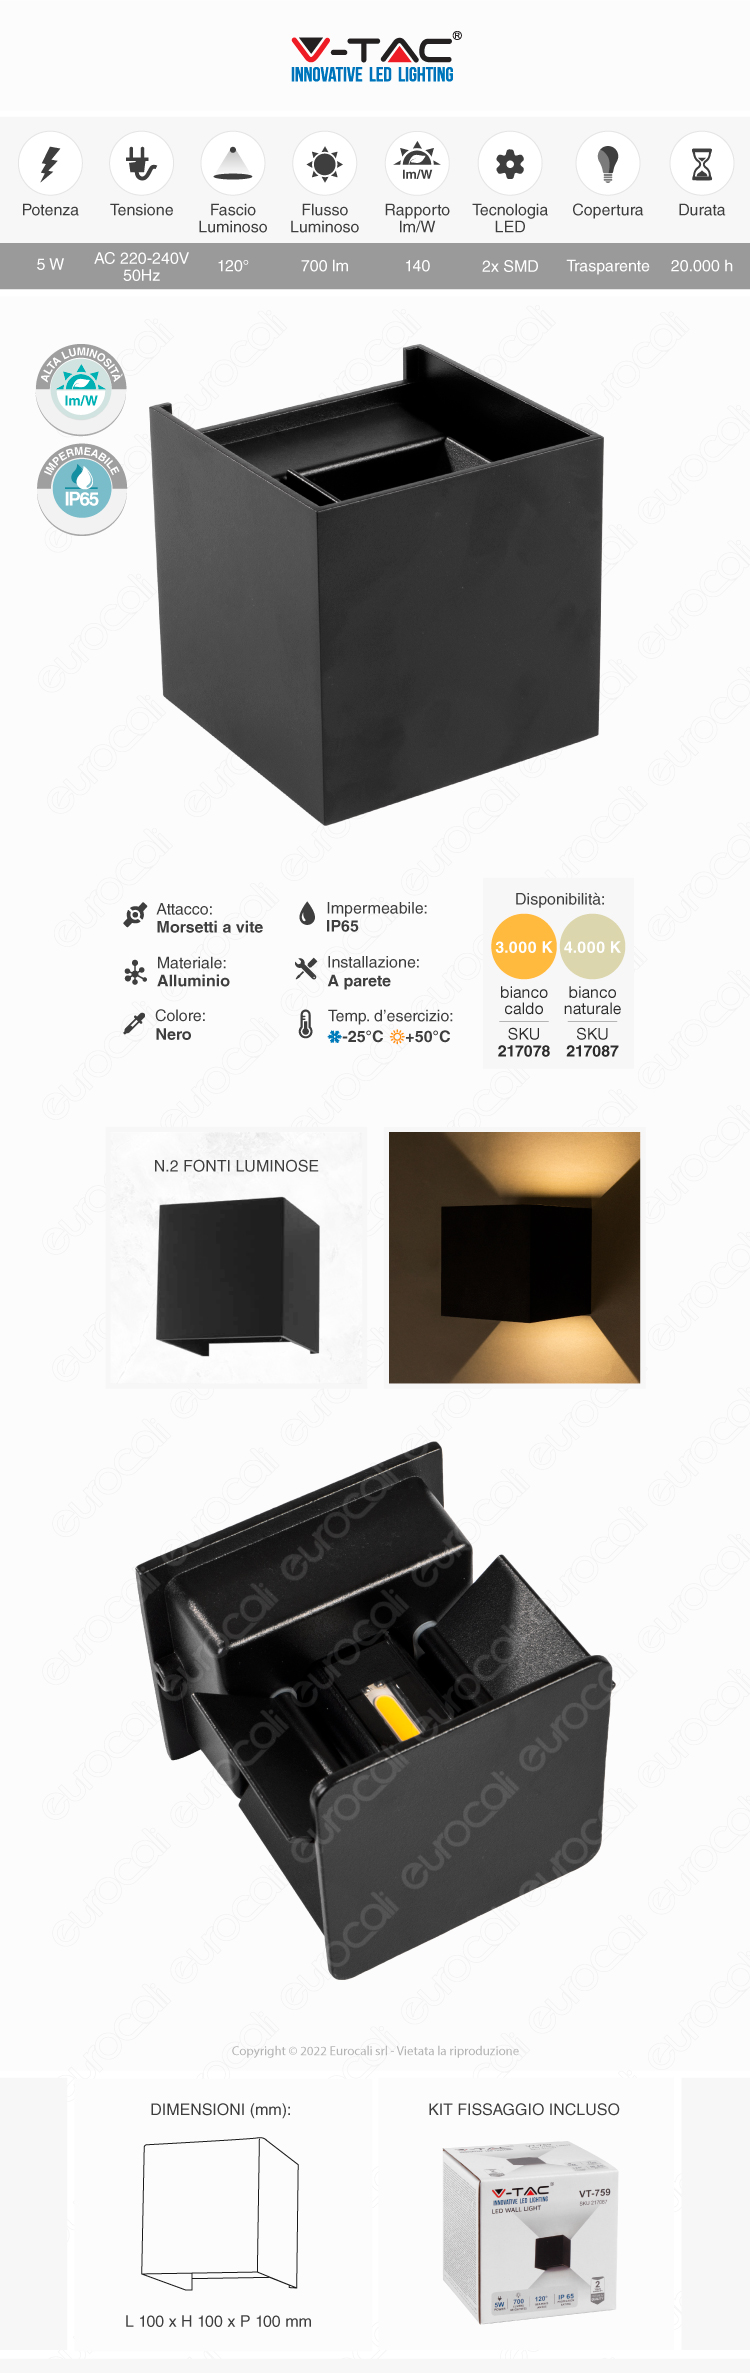 v-tac vt-759 applique led 5w wall light cob ip65 black